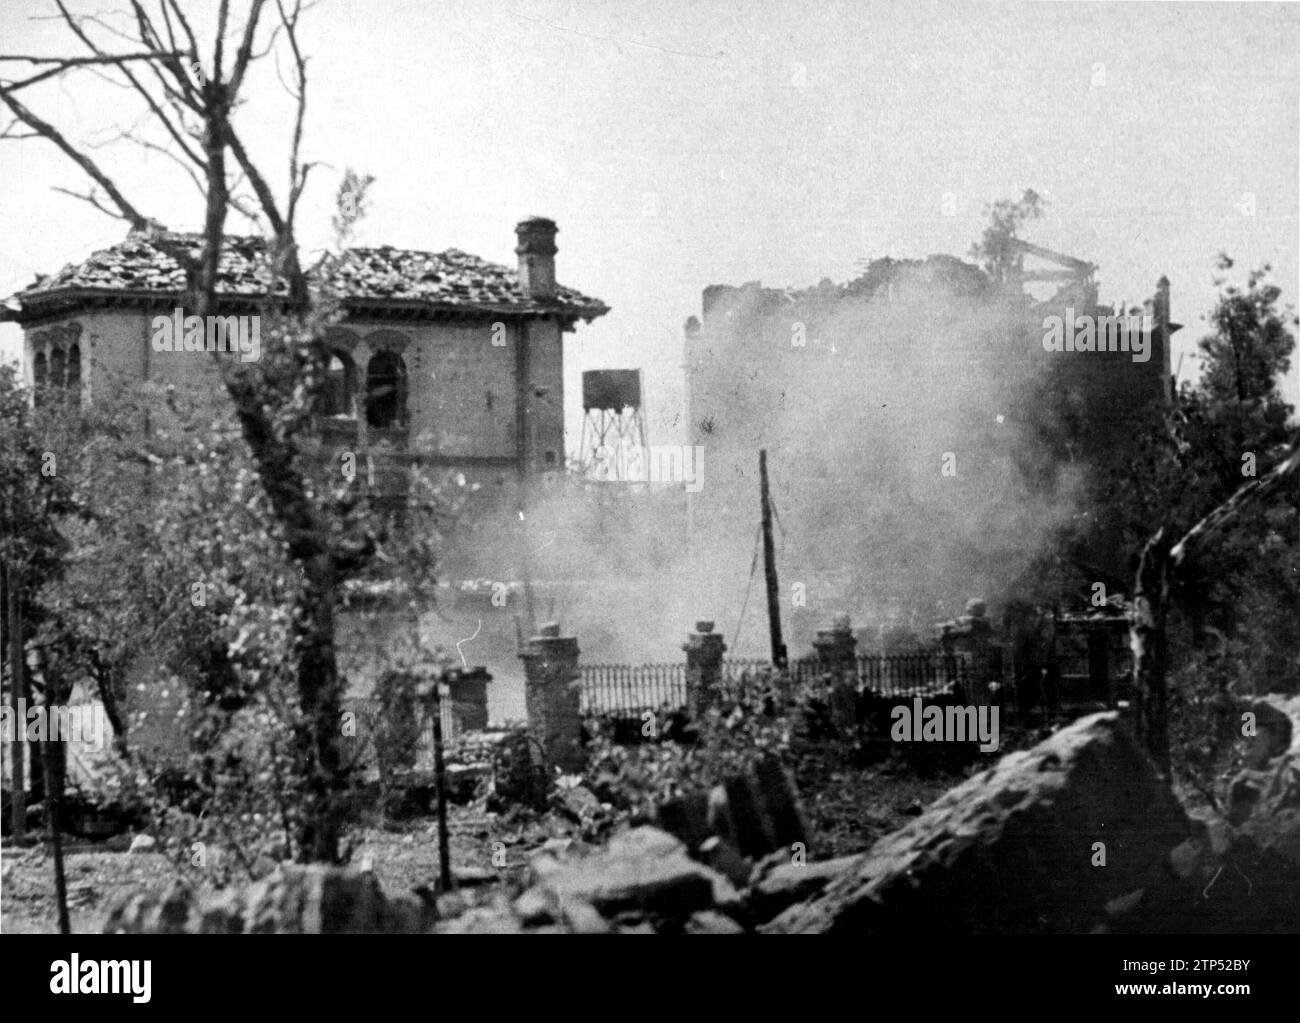 09/08/1937. E' ora di far esplodere le bombe sui parapetti nazionali. Crediti: Album / Archivo ABC / José Díaz Casariego Foto Stock